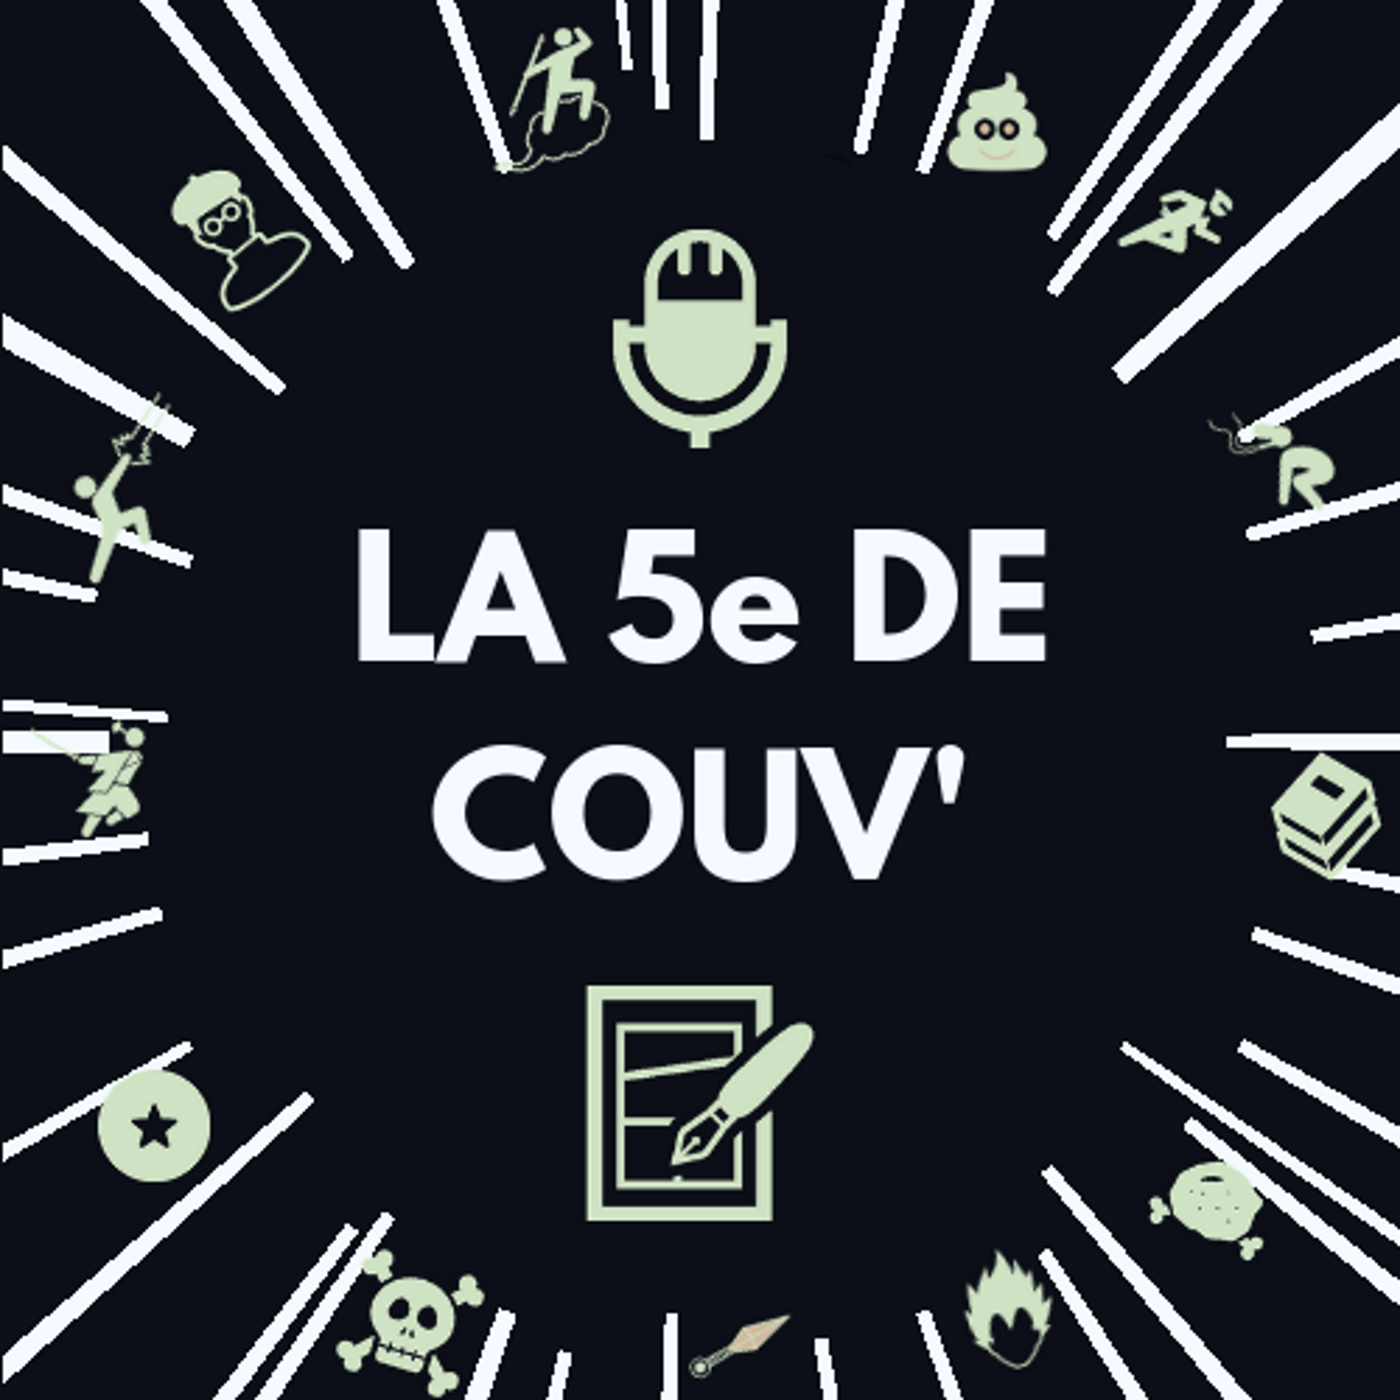 On sort du film Les Chevaliers du zodiaque ! – La 5e de Couv’ – #5DC – Saison 8 épisode 32